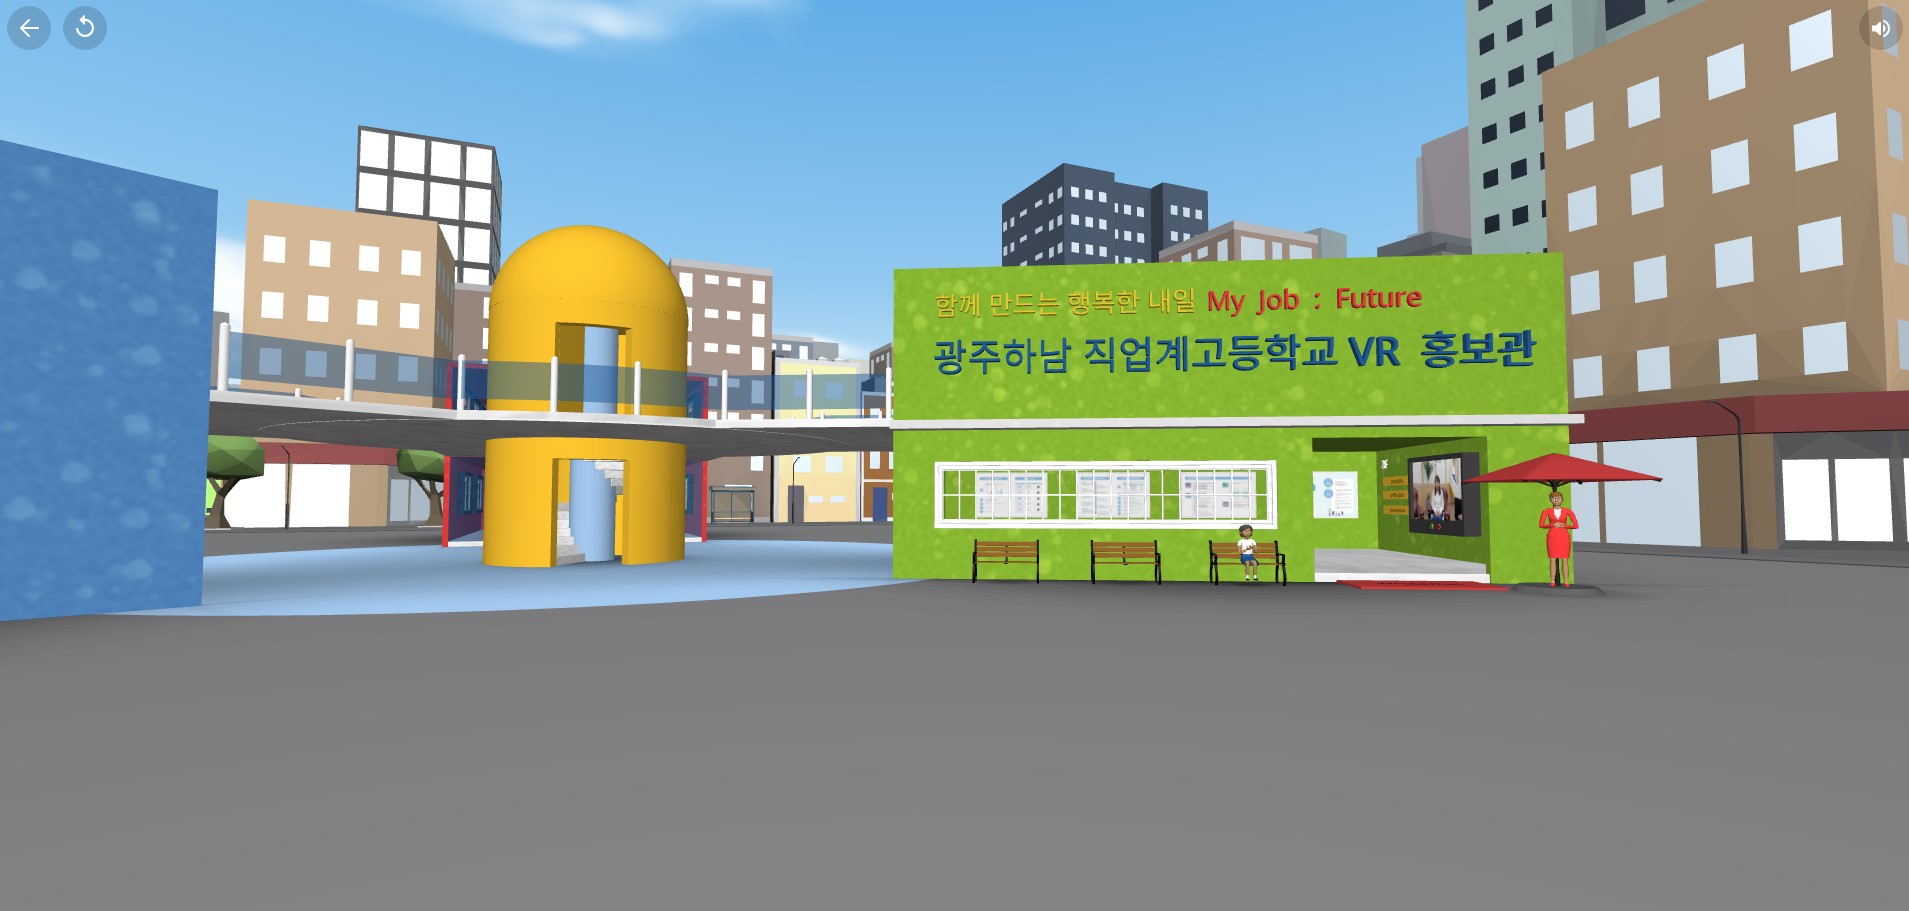 [경기]광주하남교육지원청, 직업계고 VR 홍보관 구축